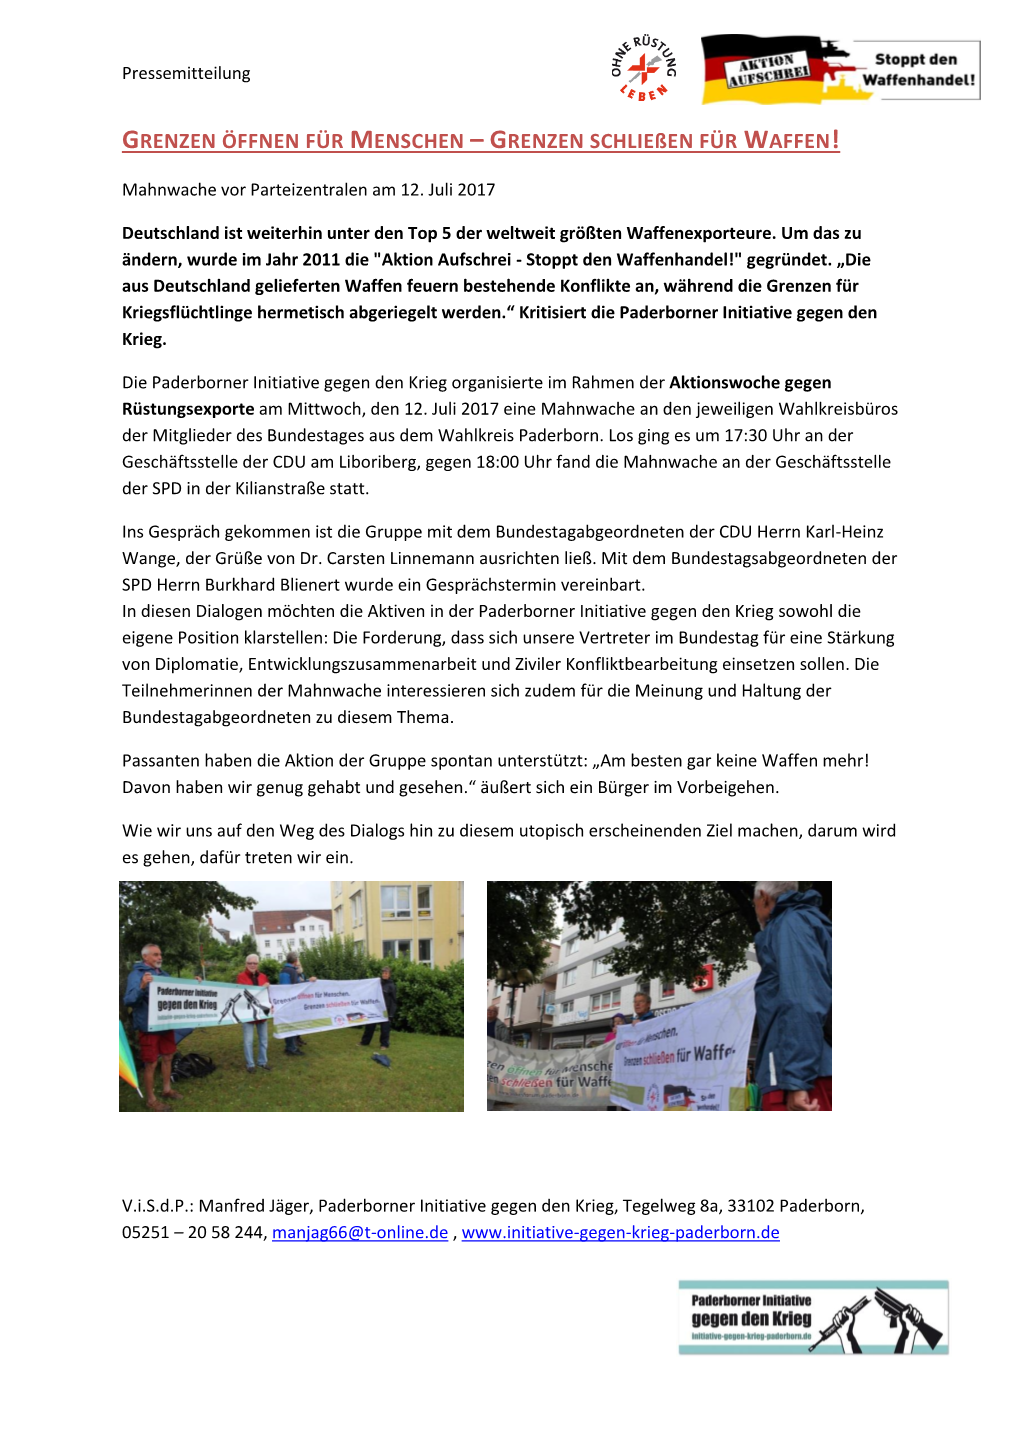 Pressemitteilung Der Paderborner Initiative Gegen